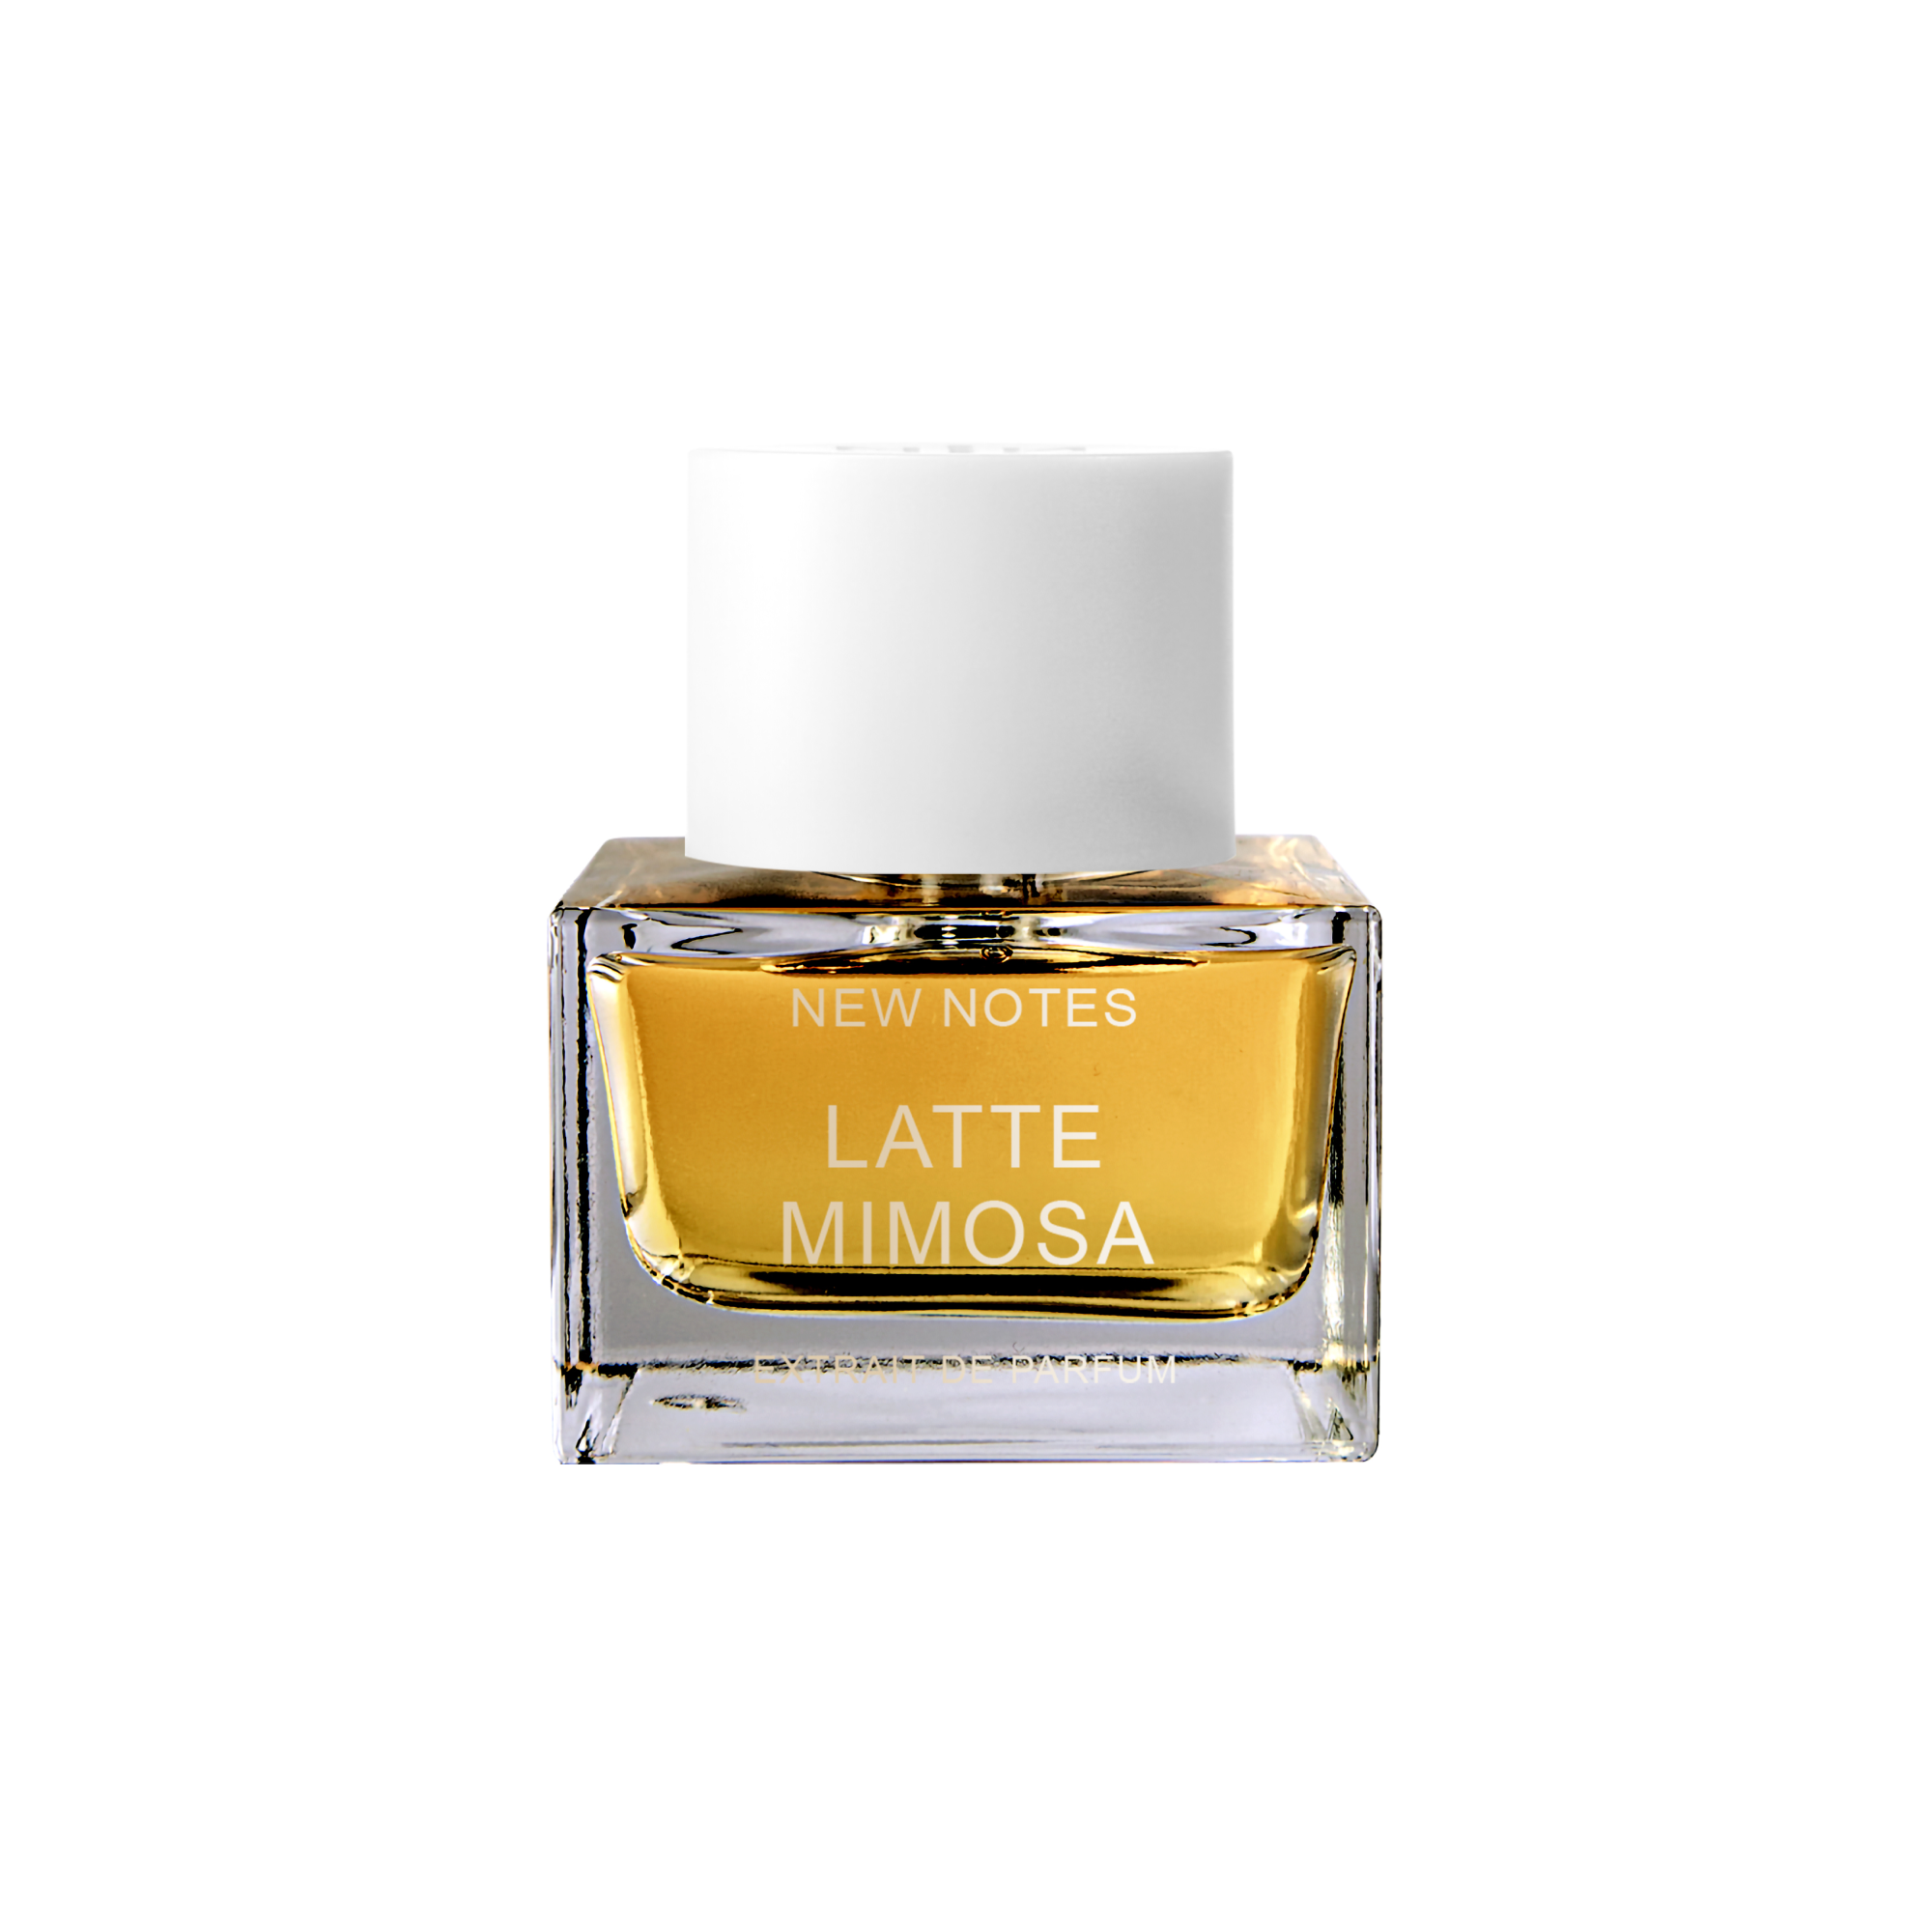 New Notes Latte Mimosa Extrait de Parfum | So Avant Garde